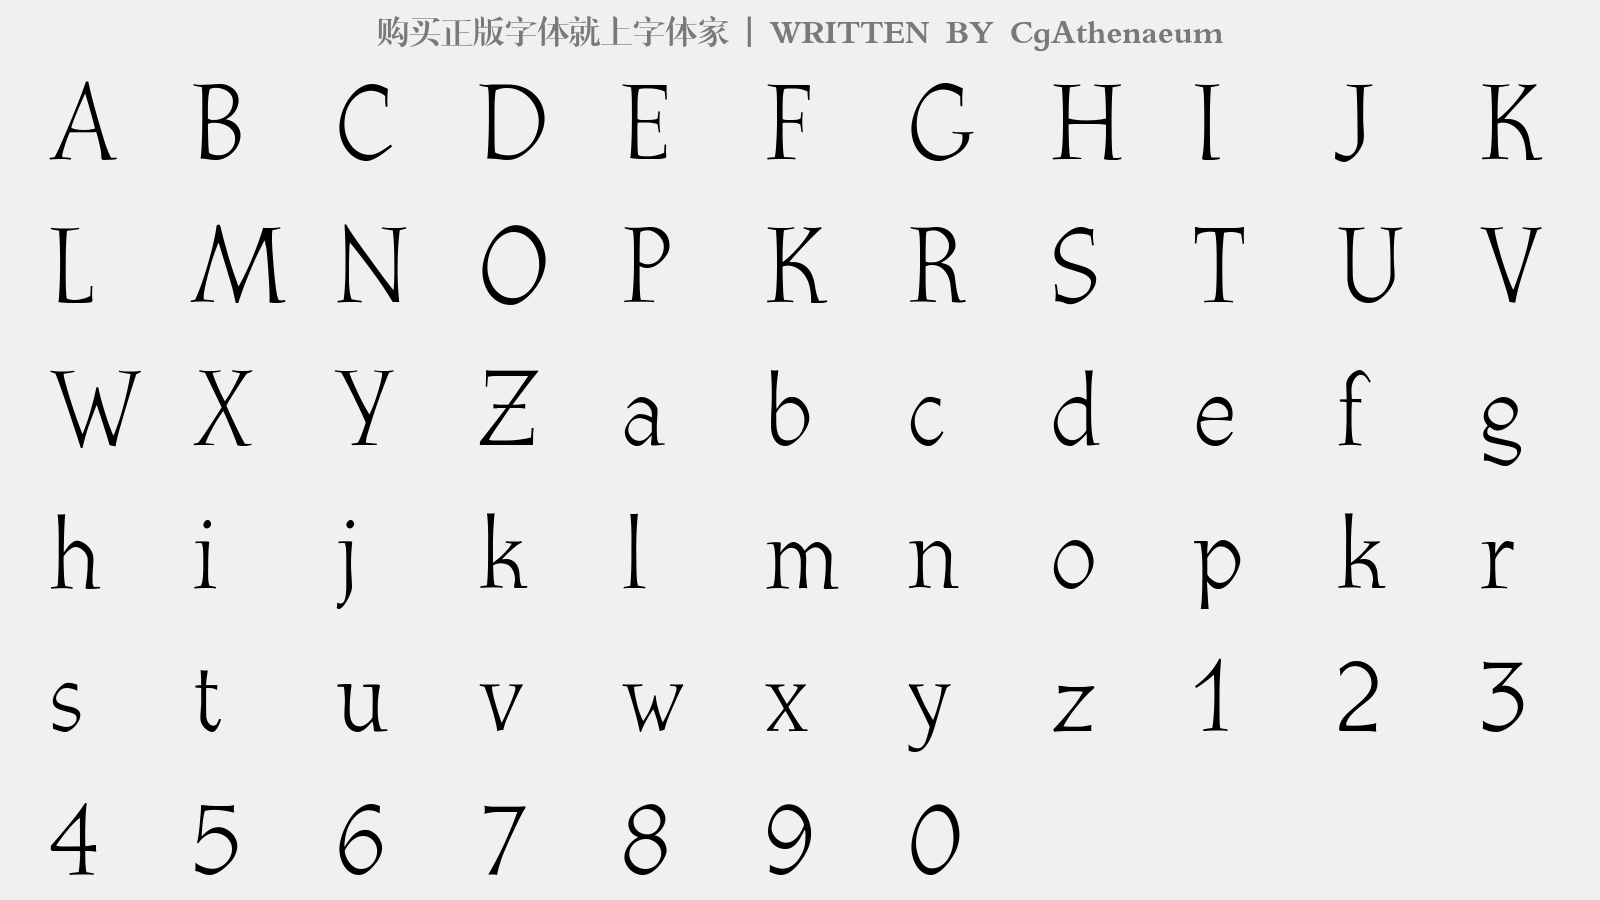 CgAthenaeum - 大写字母/小写字母/数字